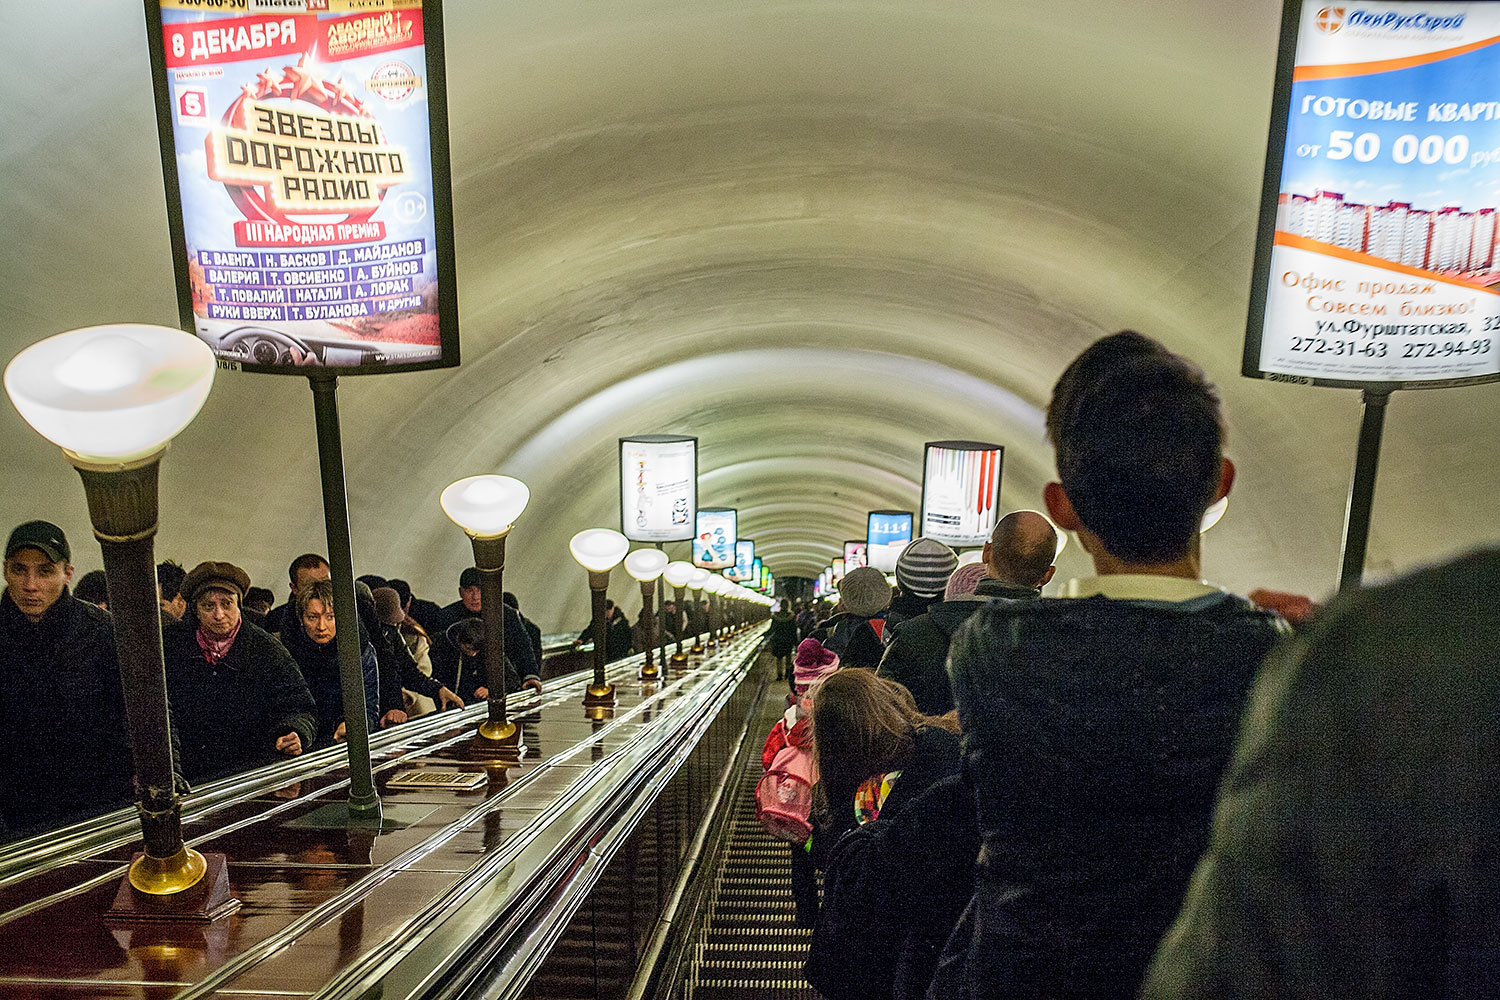 Admiralteyskaya Station takes commuters 86 metres underground